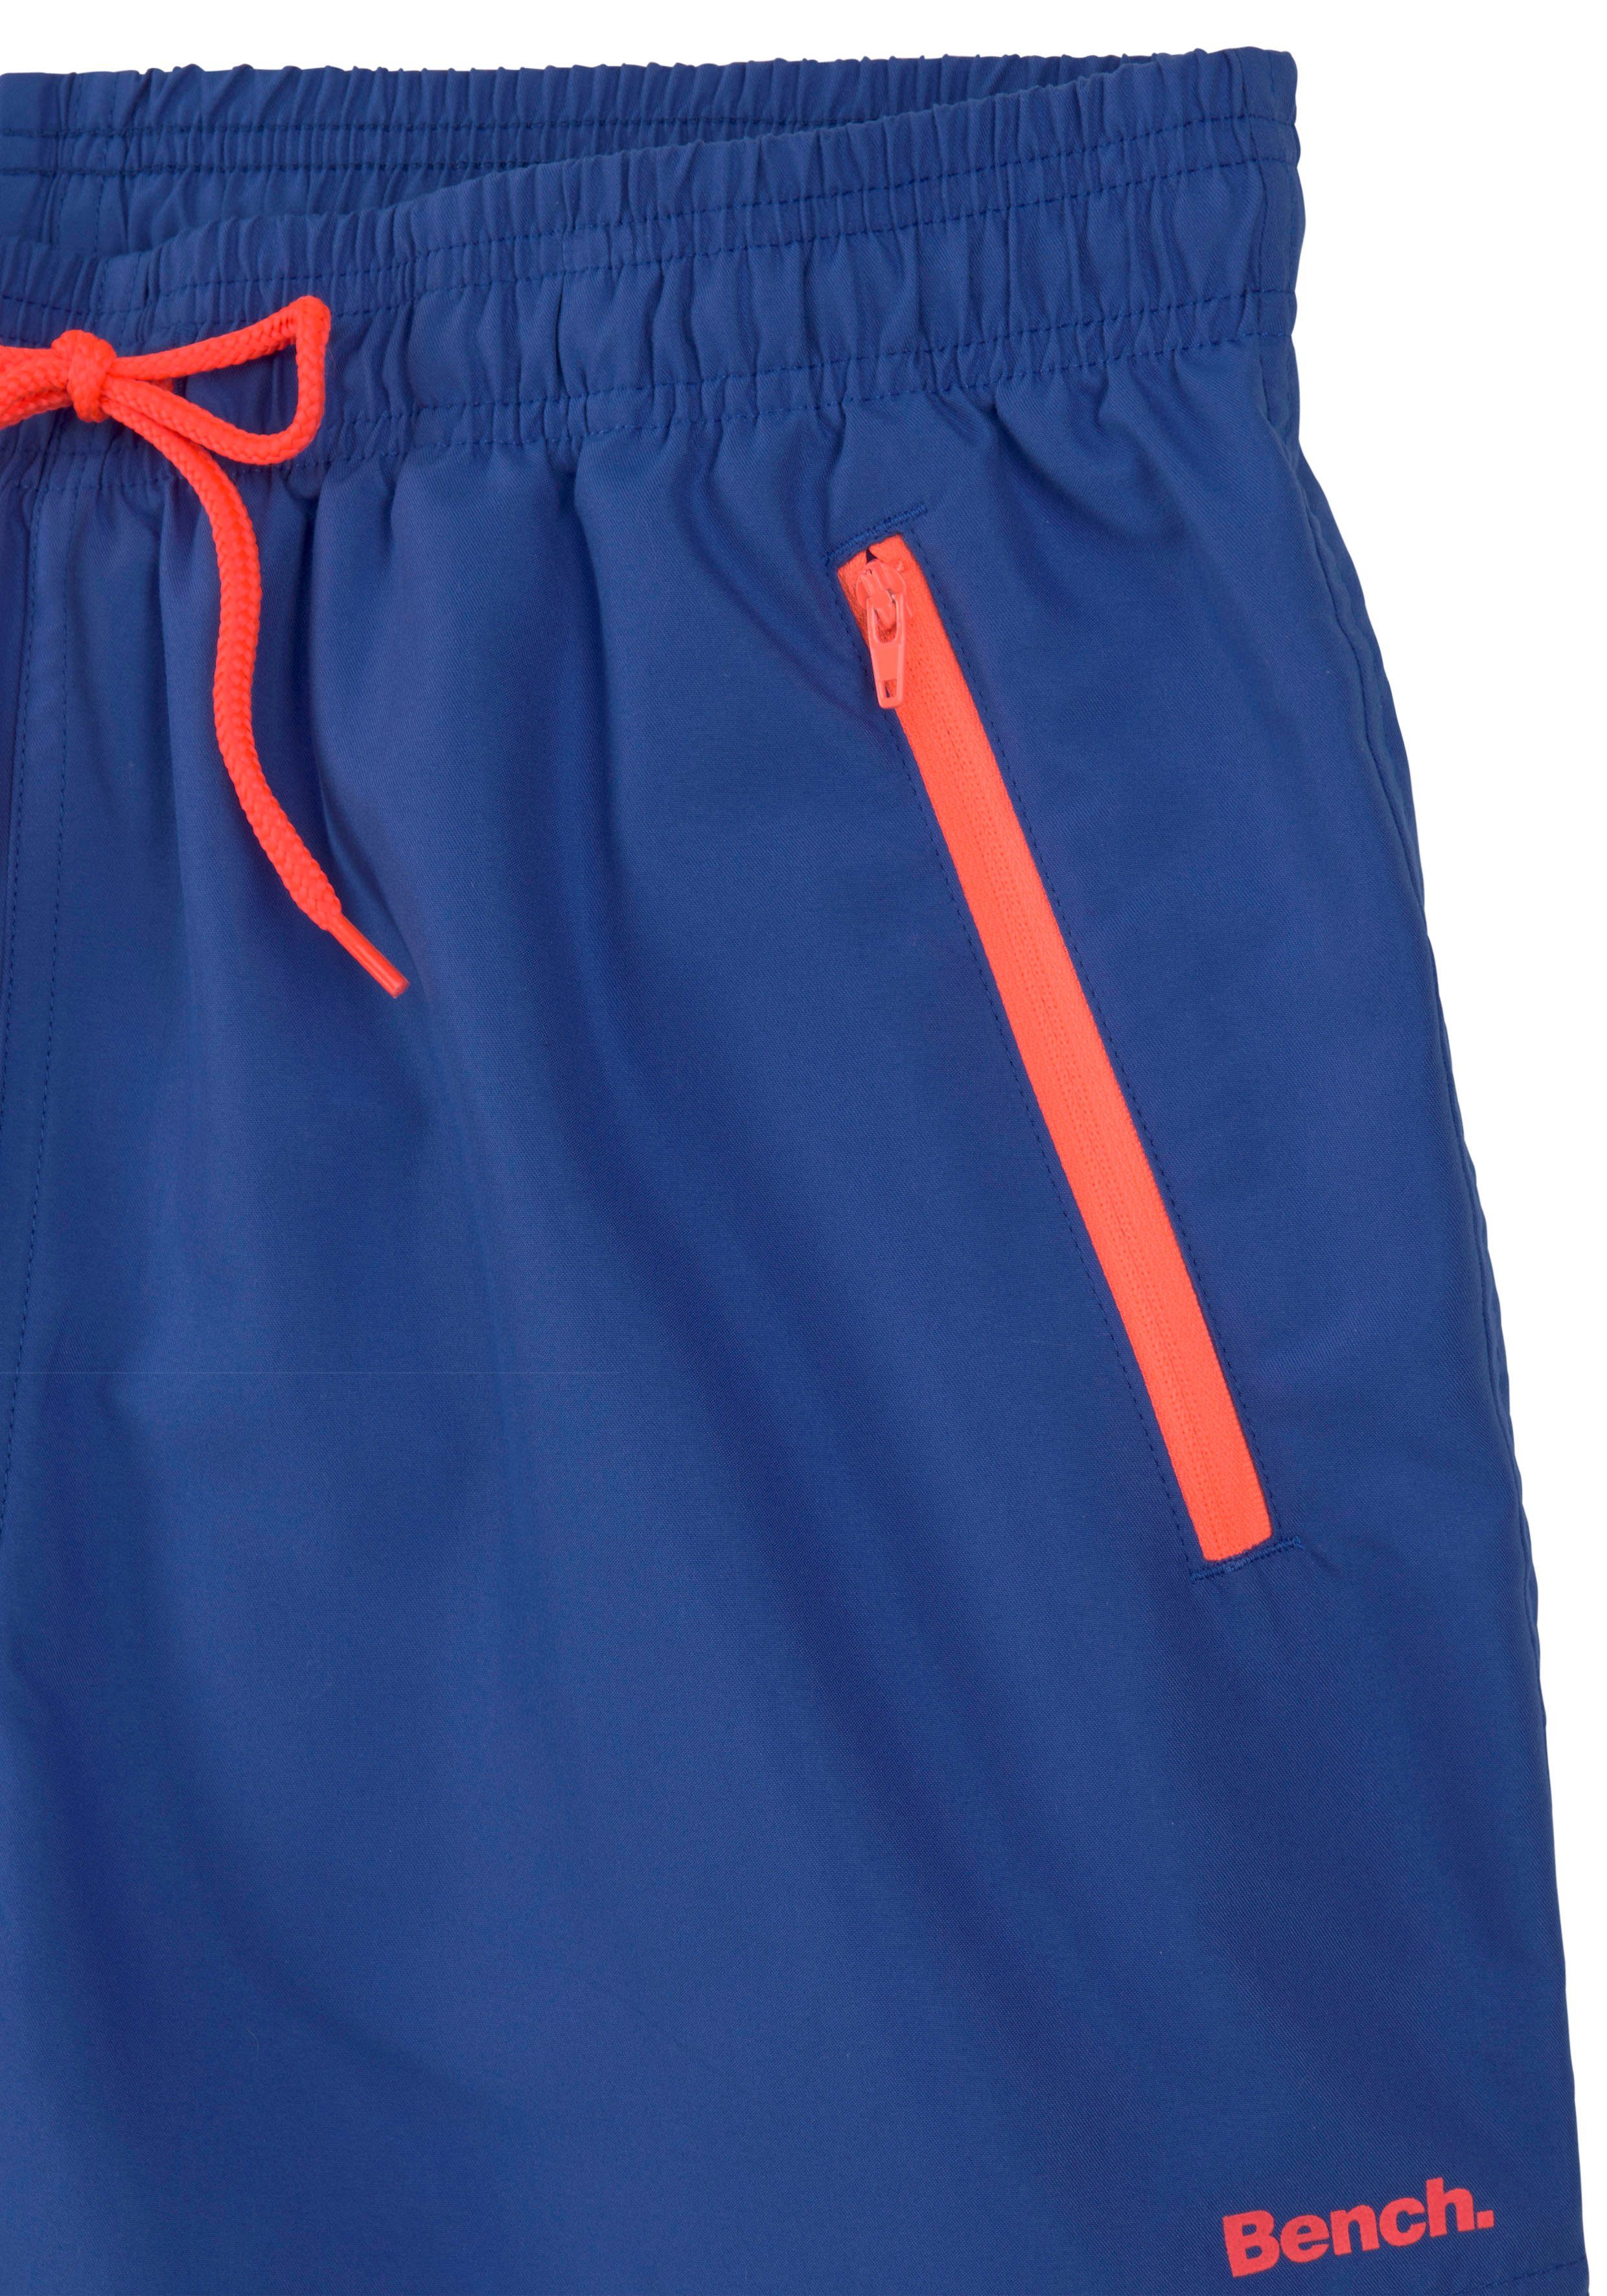 mit Bench. Reißverschlusstaschen Badeshorts blau-orange